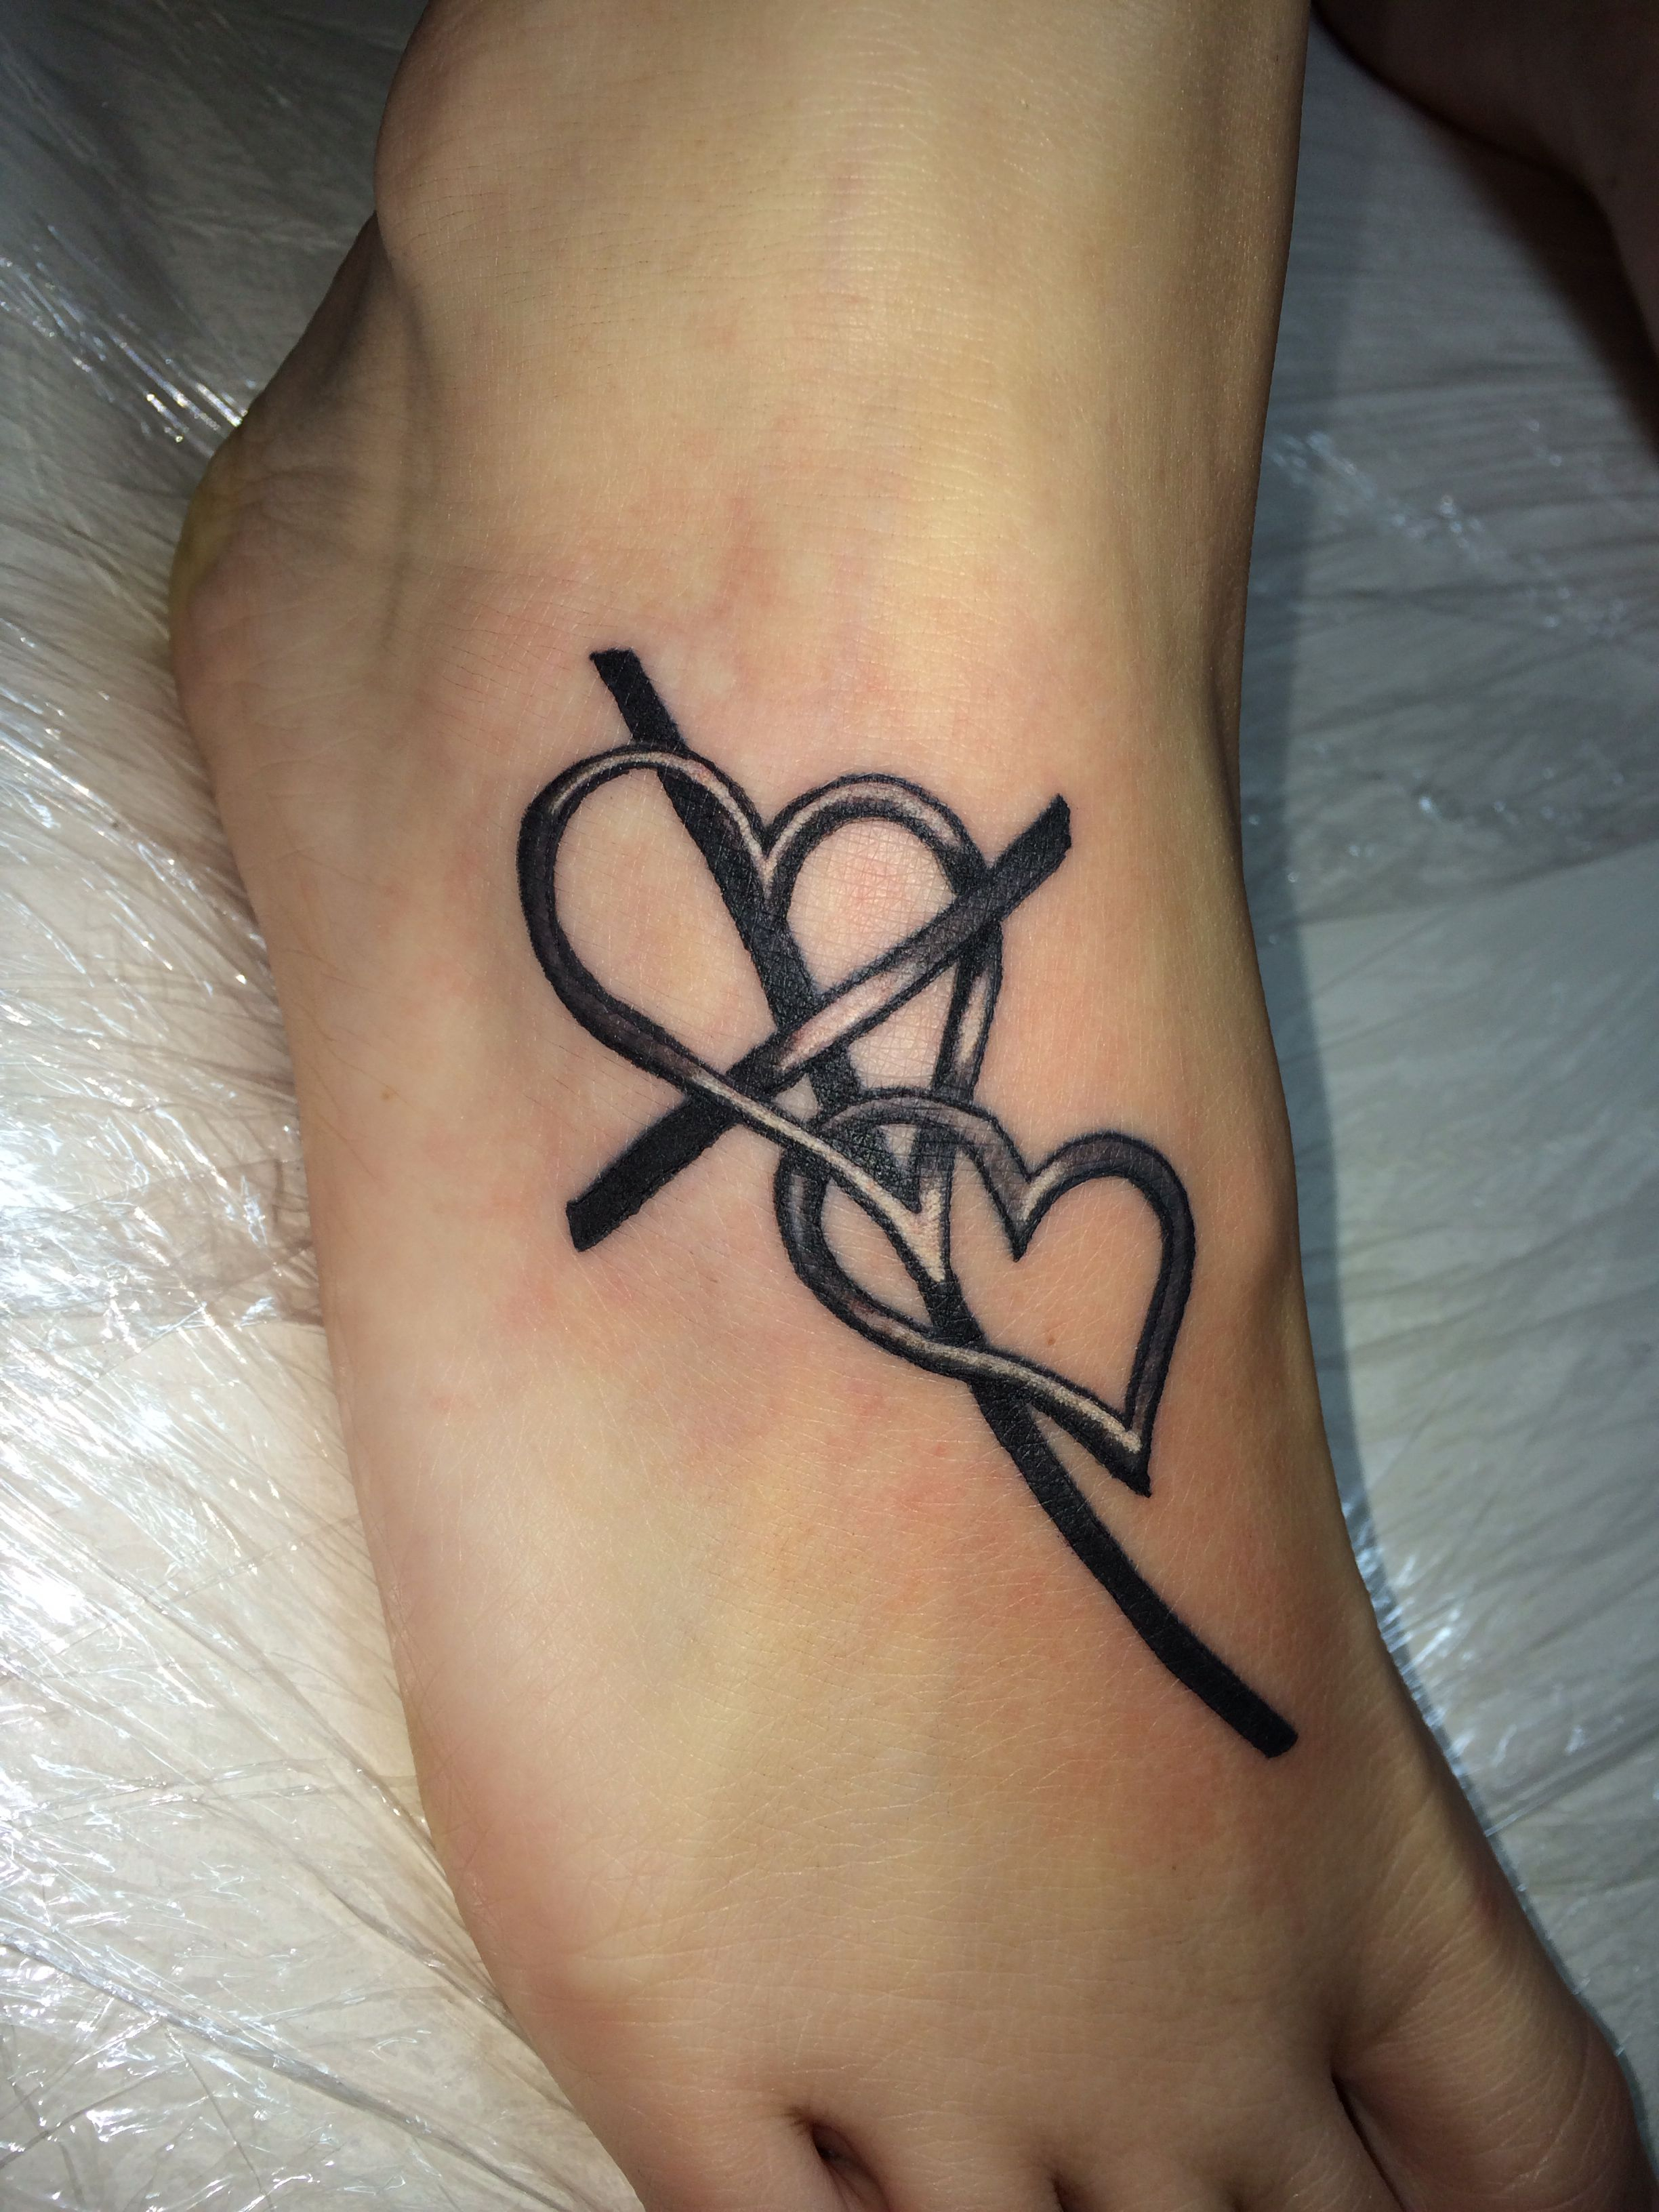 Cross Tattoo Cross With Heart Tattoo Foot Tattoo Tattoos regarding dimensions 2448 X 3264